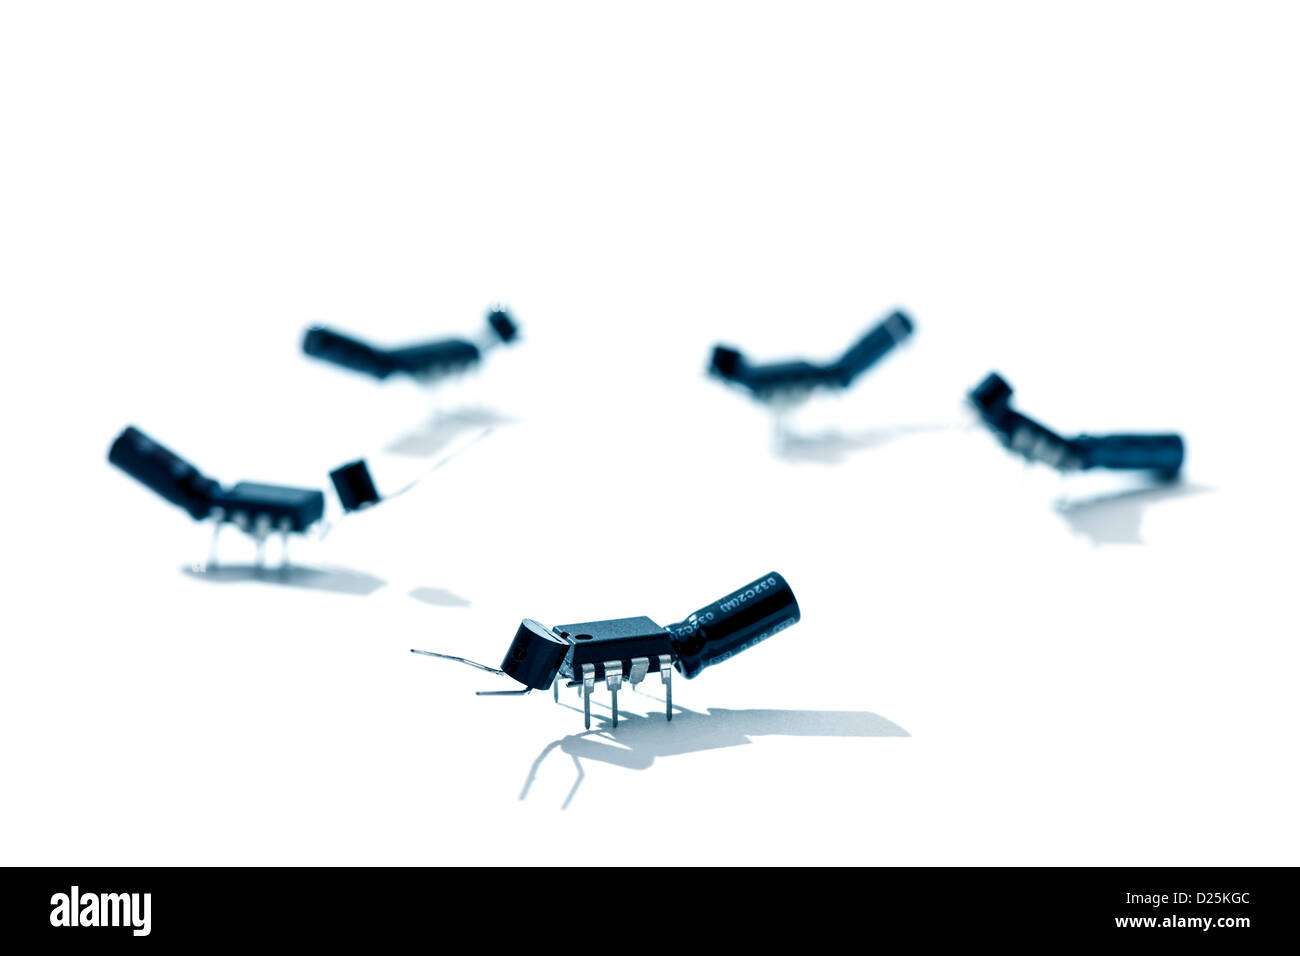 Ameisen / bugs aus Mikrochips und andere elektronische Bauteile Stockfoto